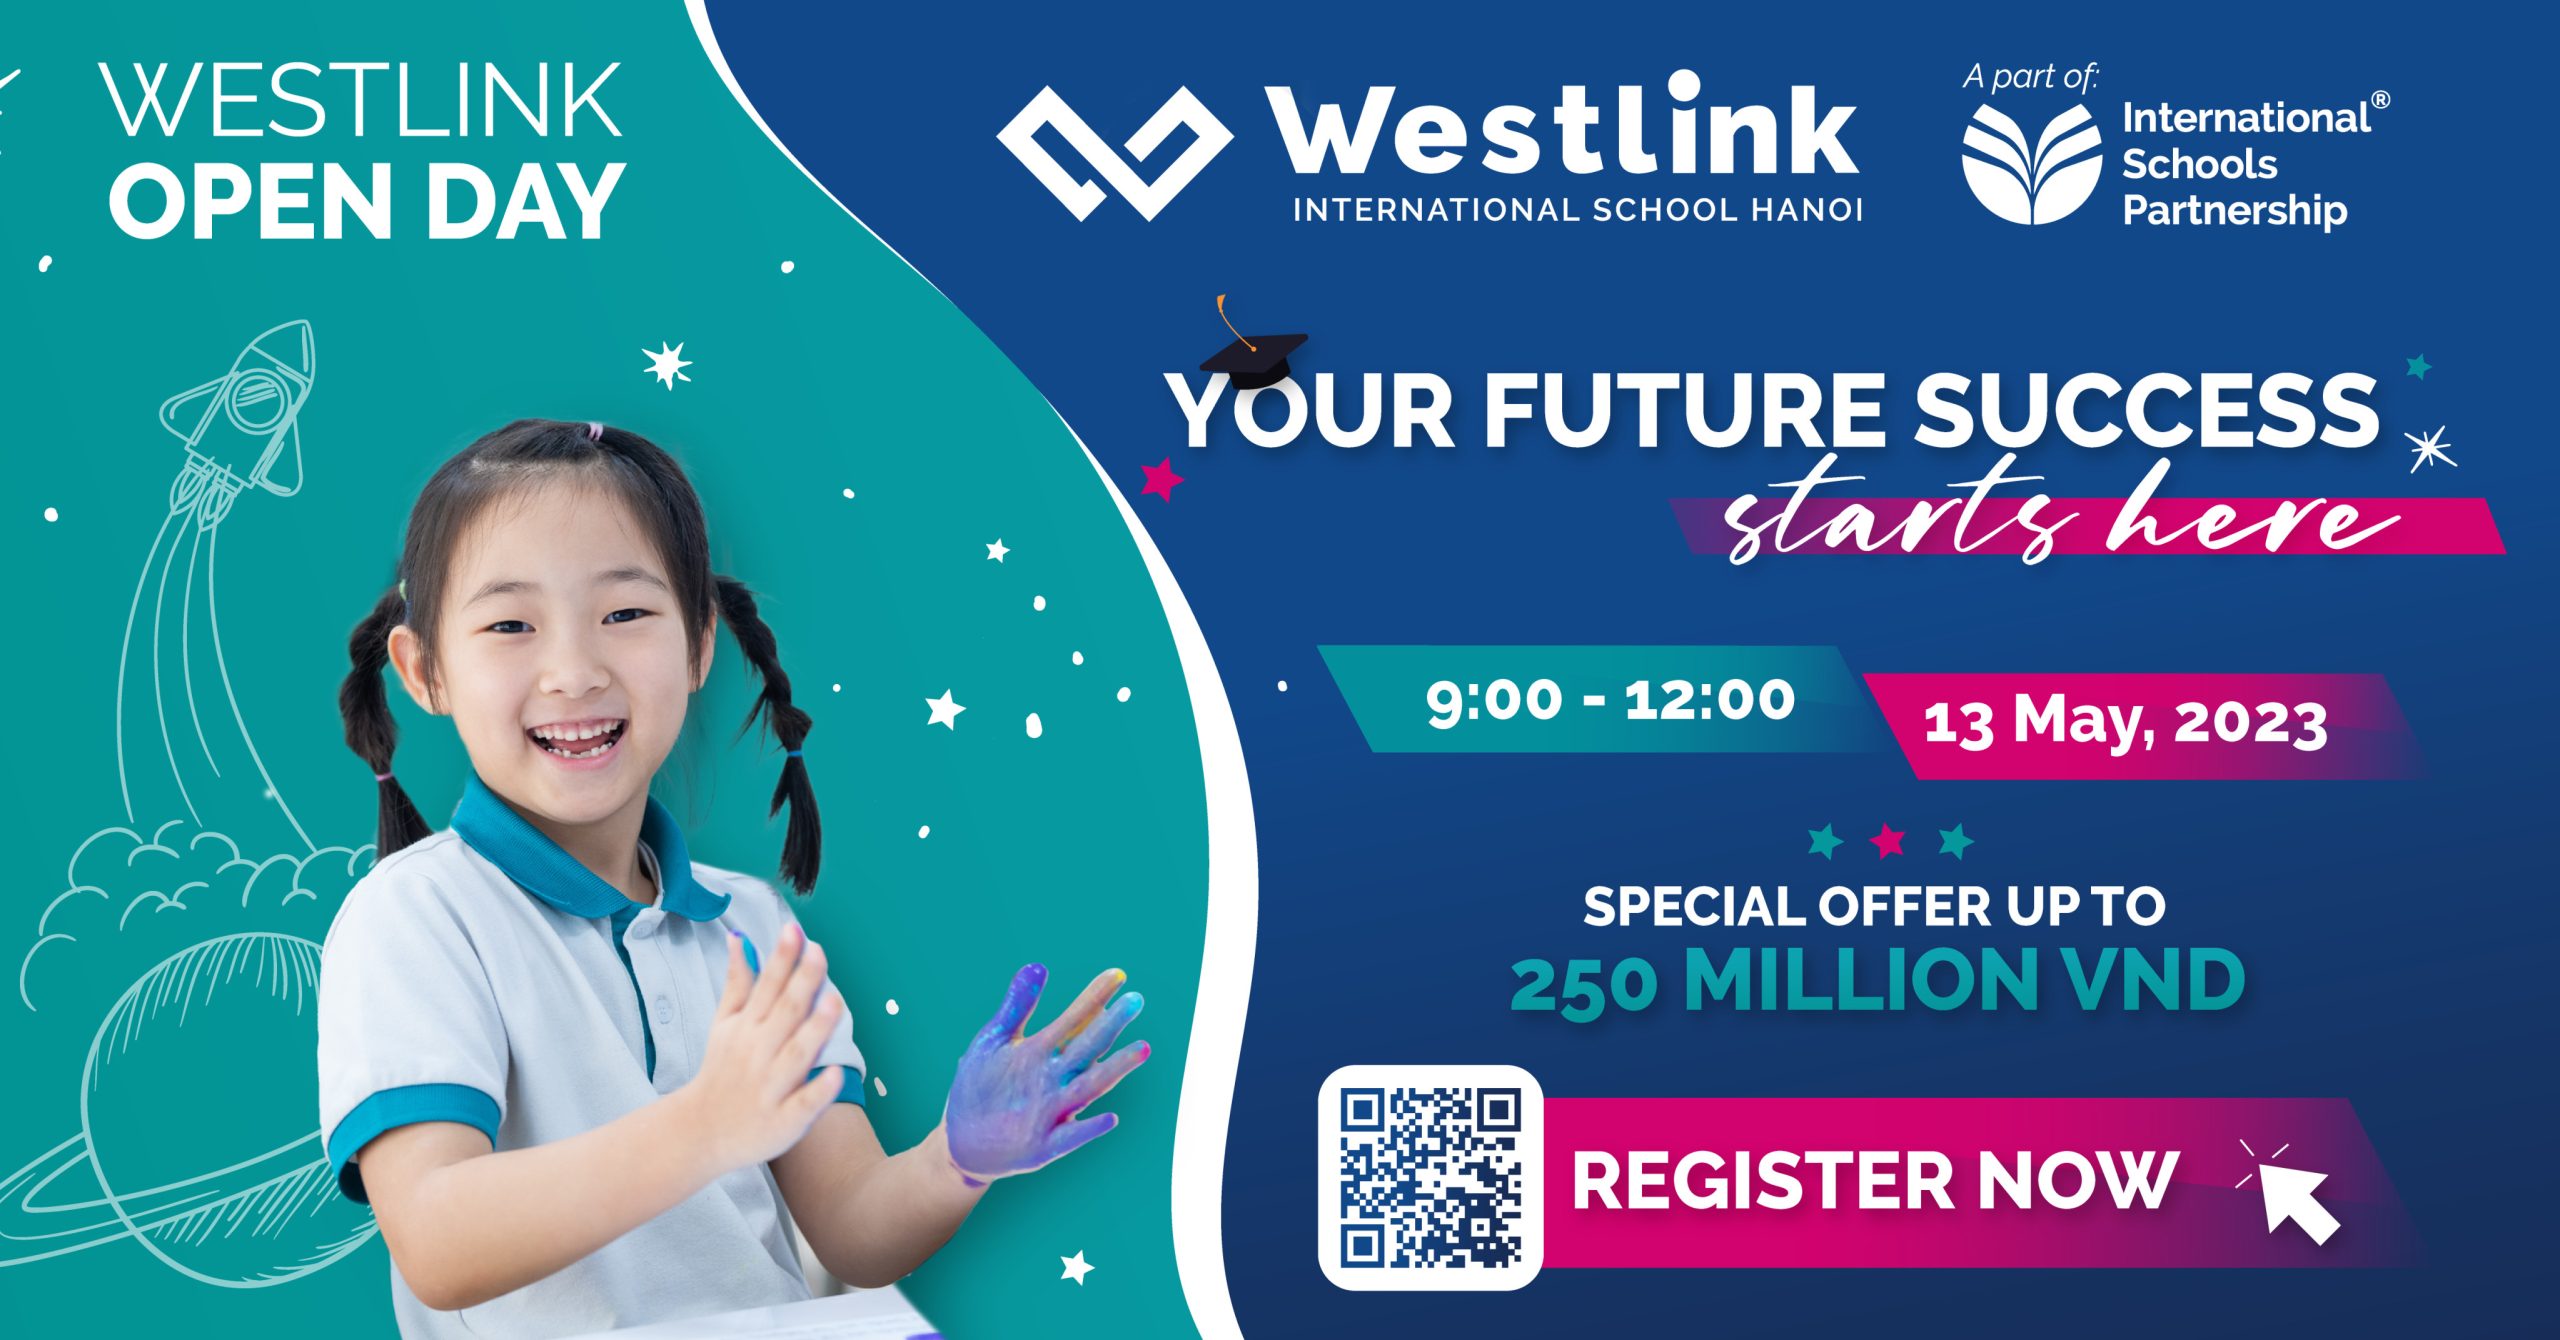 Ngày Hội Open Day Westlink: Hành trang cho tương lai vững vàng